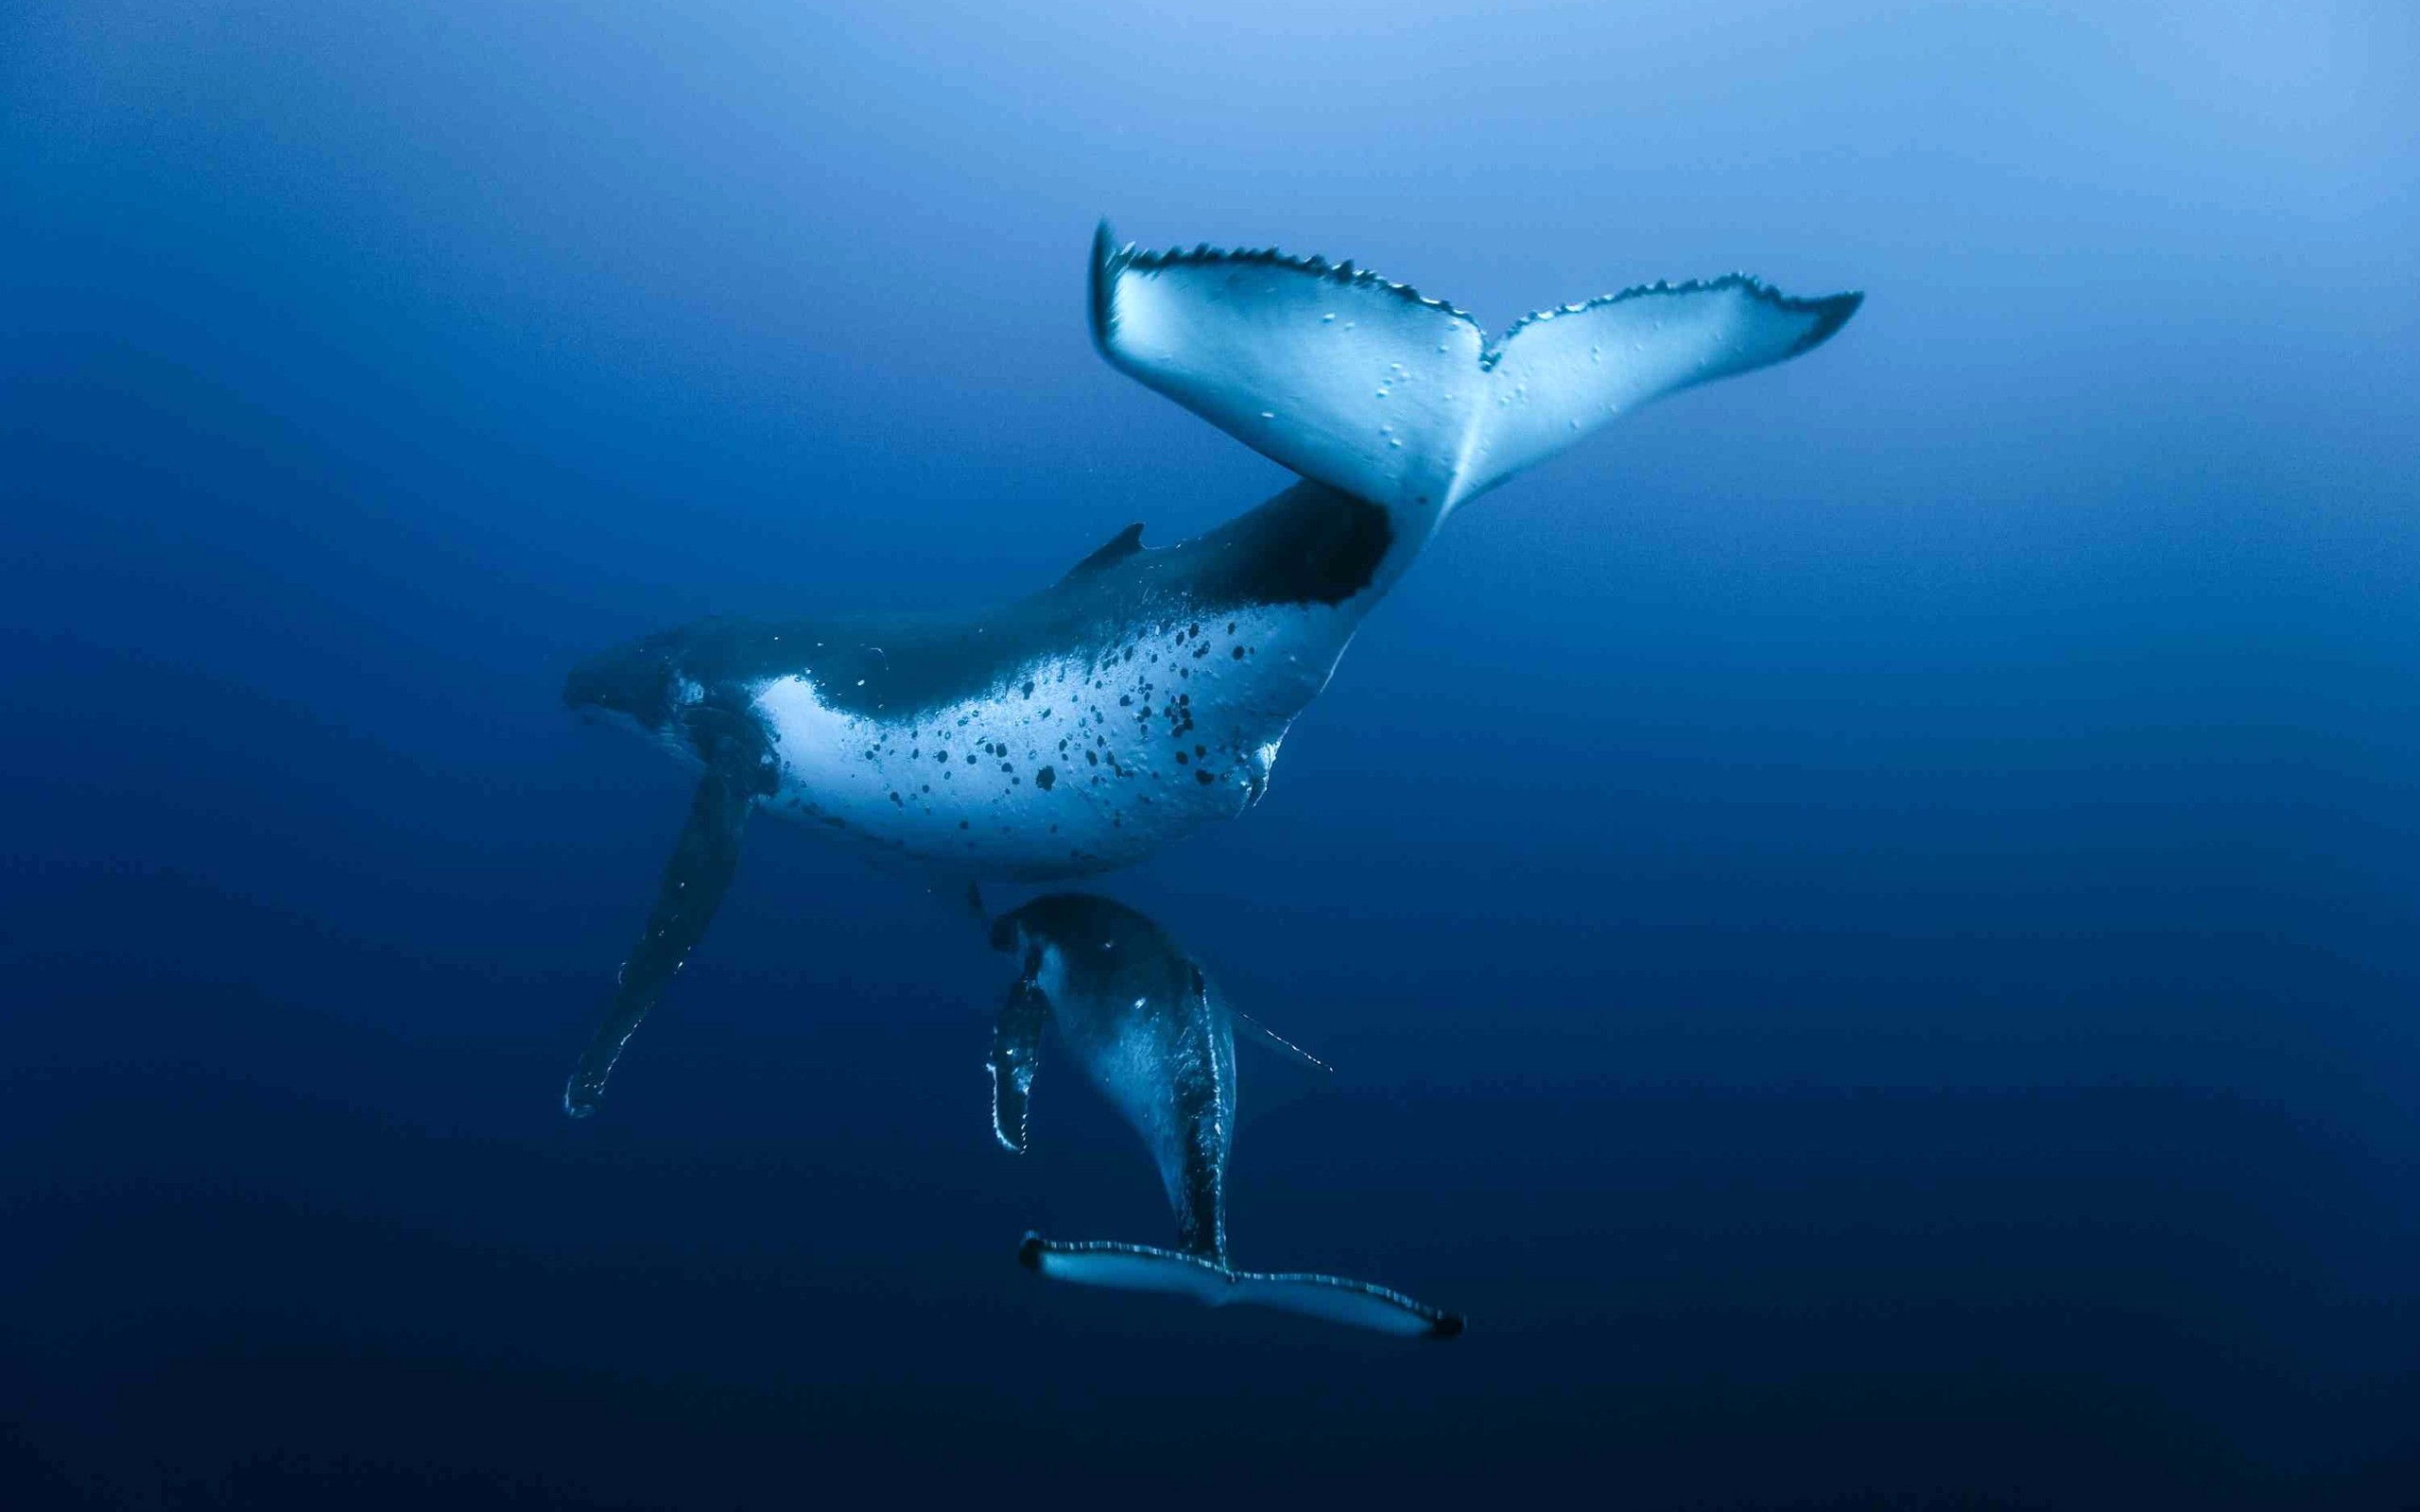 General 2560x1600 whale underwater animals mammals